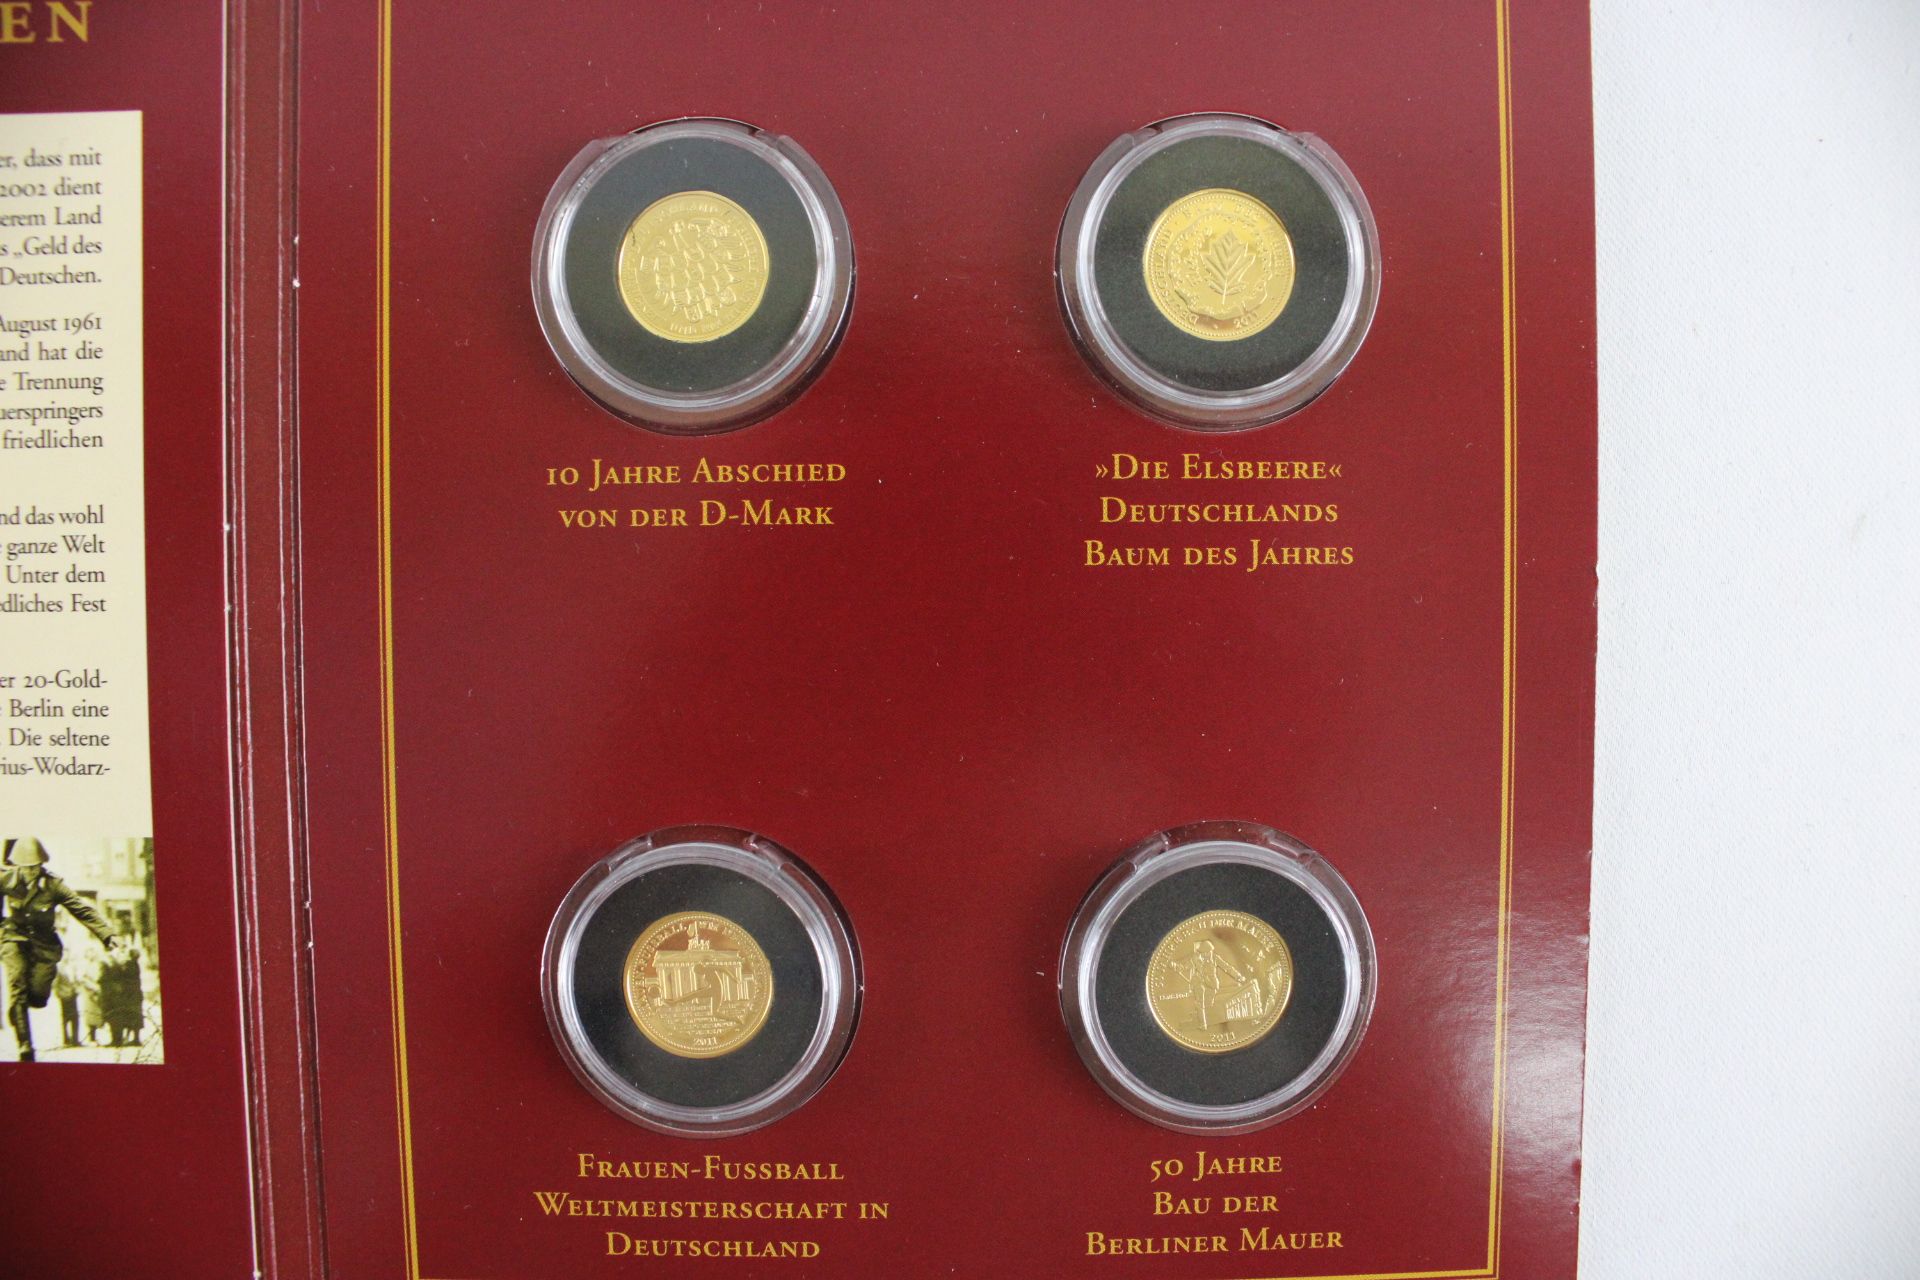 Die Deutschen Gold-Jahresausgaben 2011, 4 Goldmünzen, Berlin - Image 3 of 4